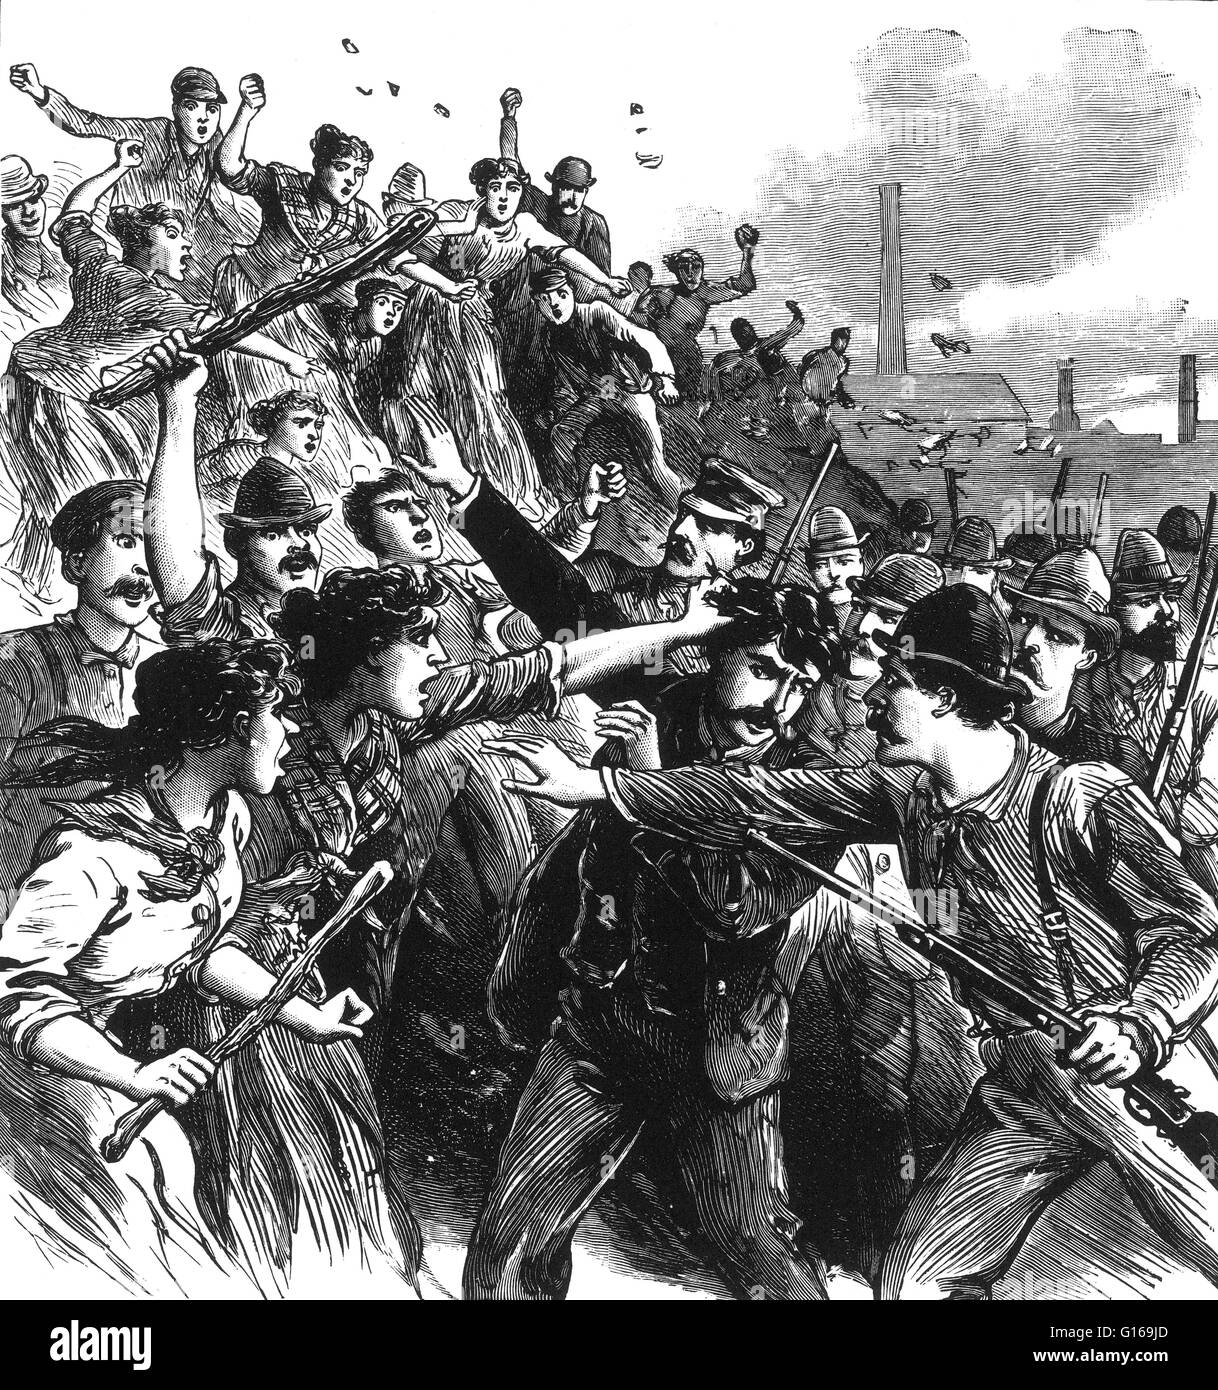 La grève de Homestead était un lock-out et de grève industrielle qui a débuté le 30 juin 1892, qui ont abouti à une bataille entre les grévistes et les agents de sécurité privée le 6 juillet 1892. La bataille a été le deuxième plus grand et l'un des plus graves conflits en labo Banque D'Images